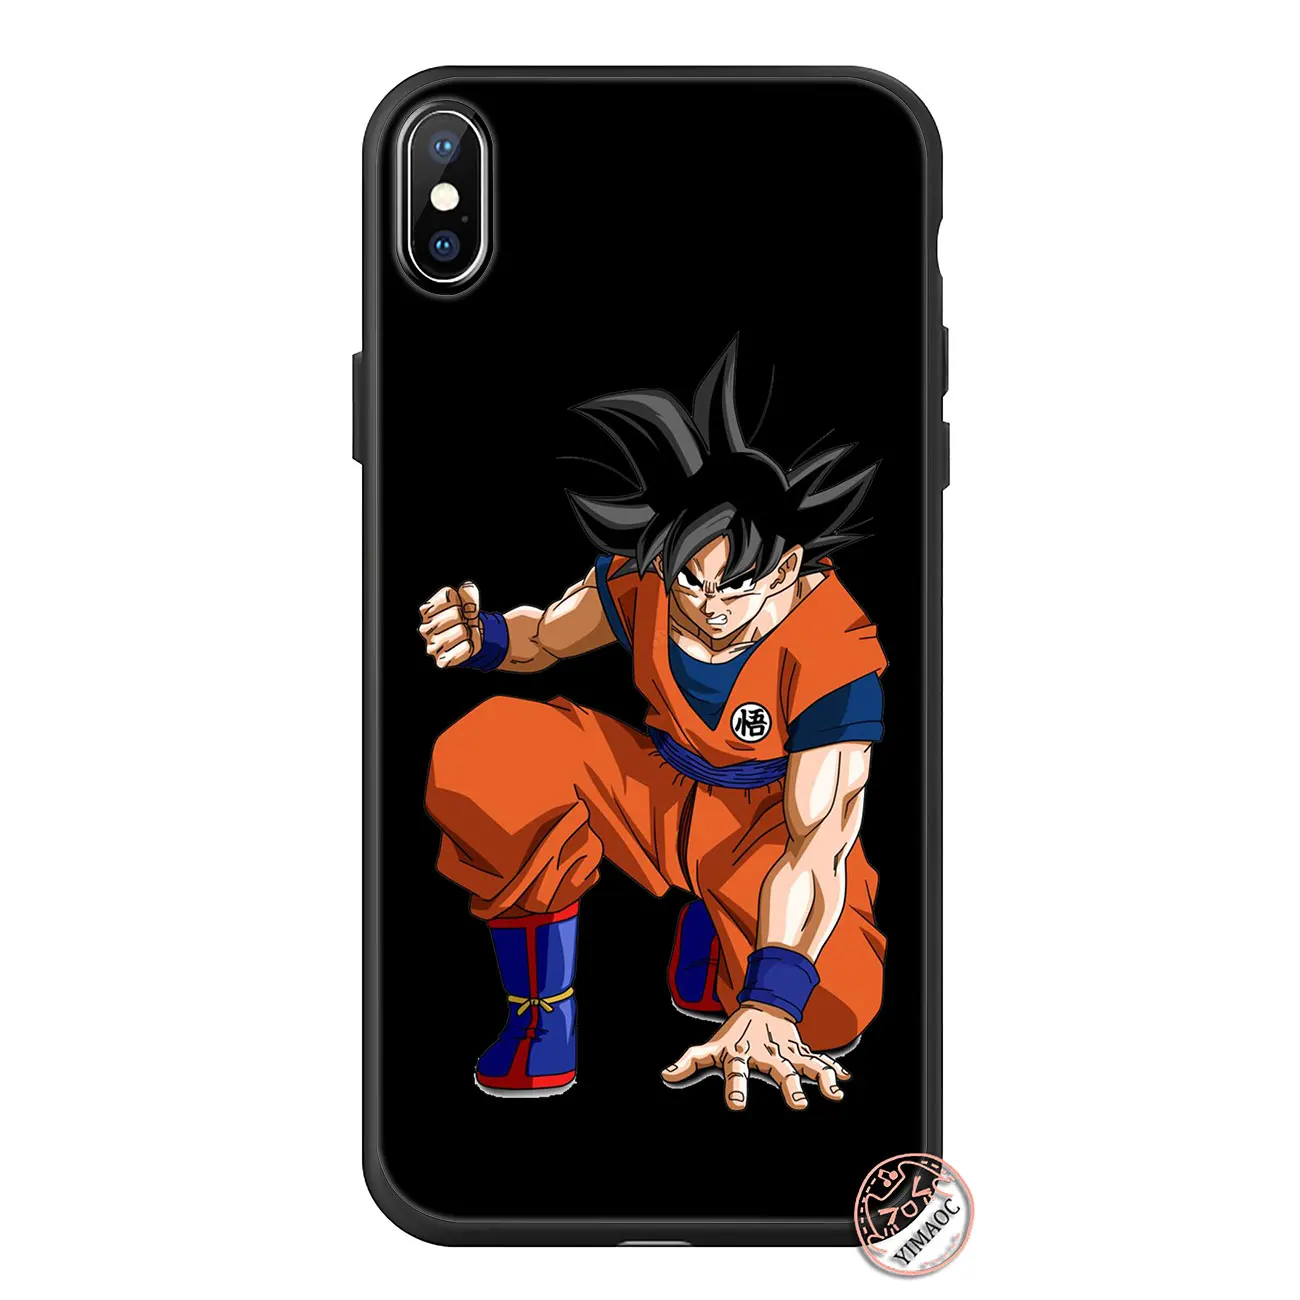 YIMAOC Dragon Ball z Goku Мягкий силиконовый чехол для телефона iPhone 11 Pro XS Max XR X 6 6S 7 8 Plus 5 5S SE 10 TPU черный чехол - Цвет: 11